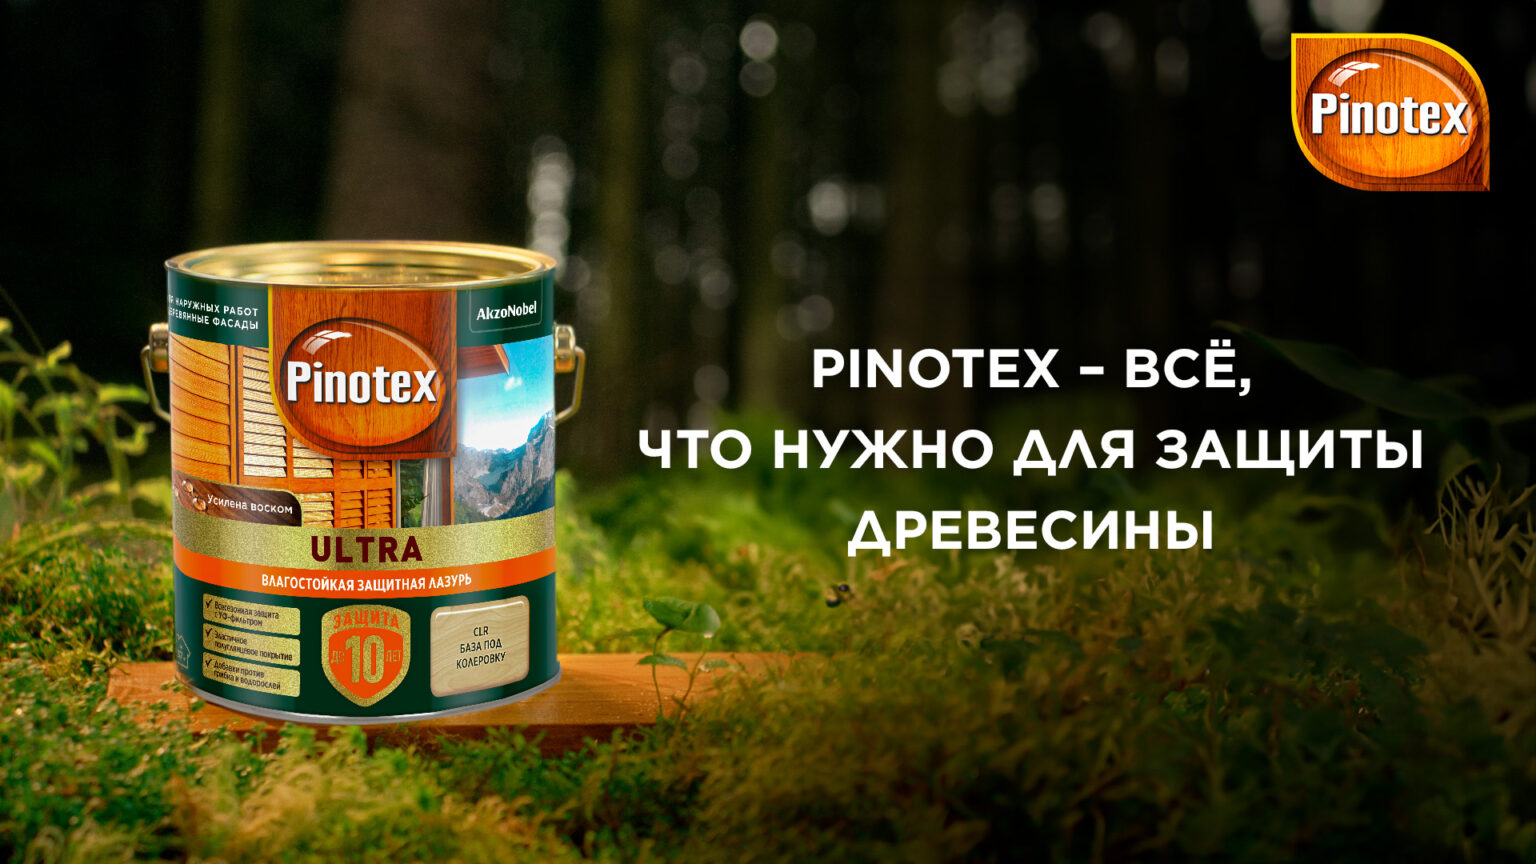 Pinotex_1